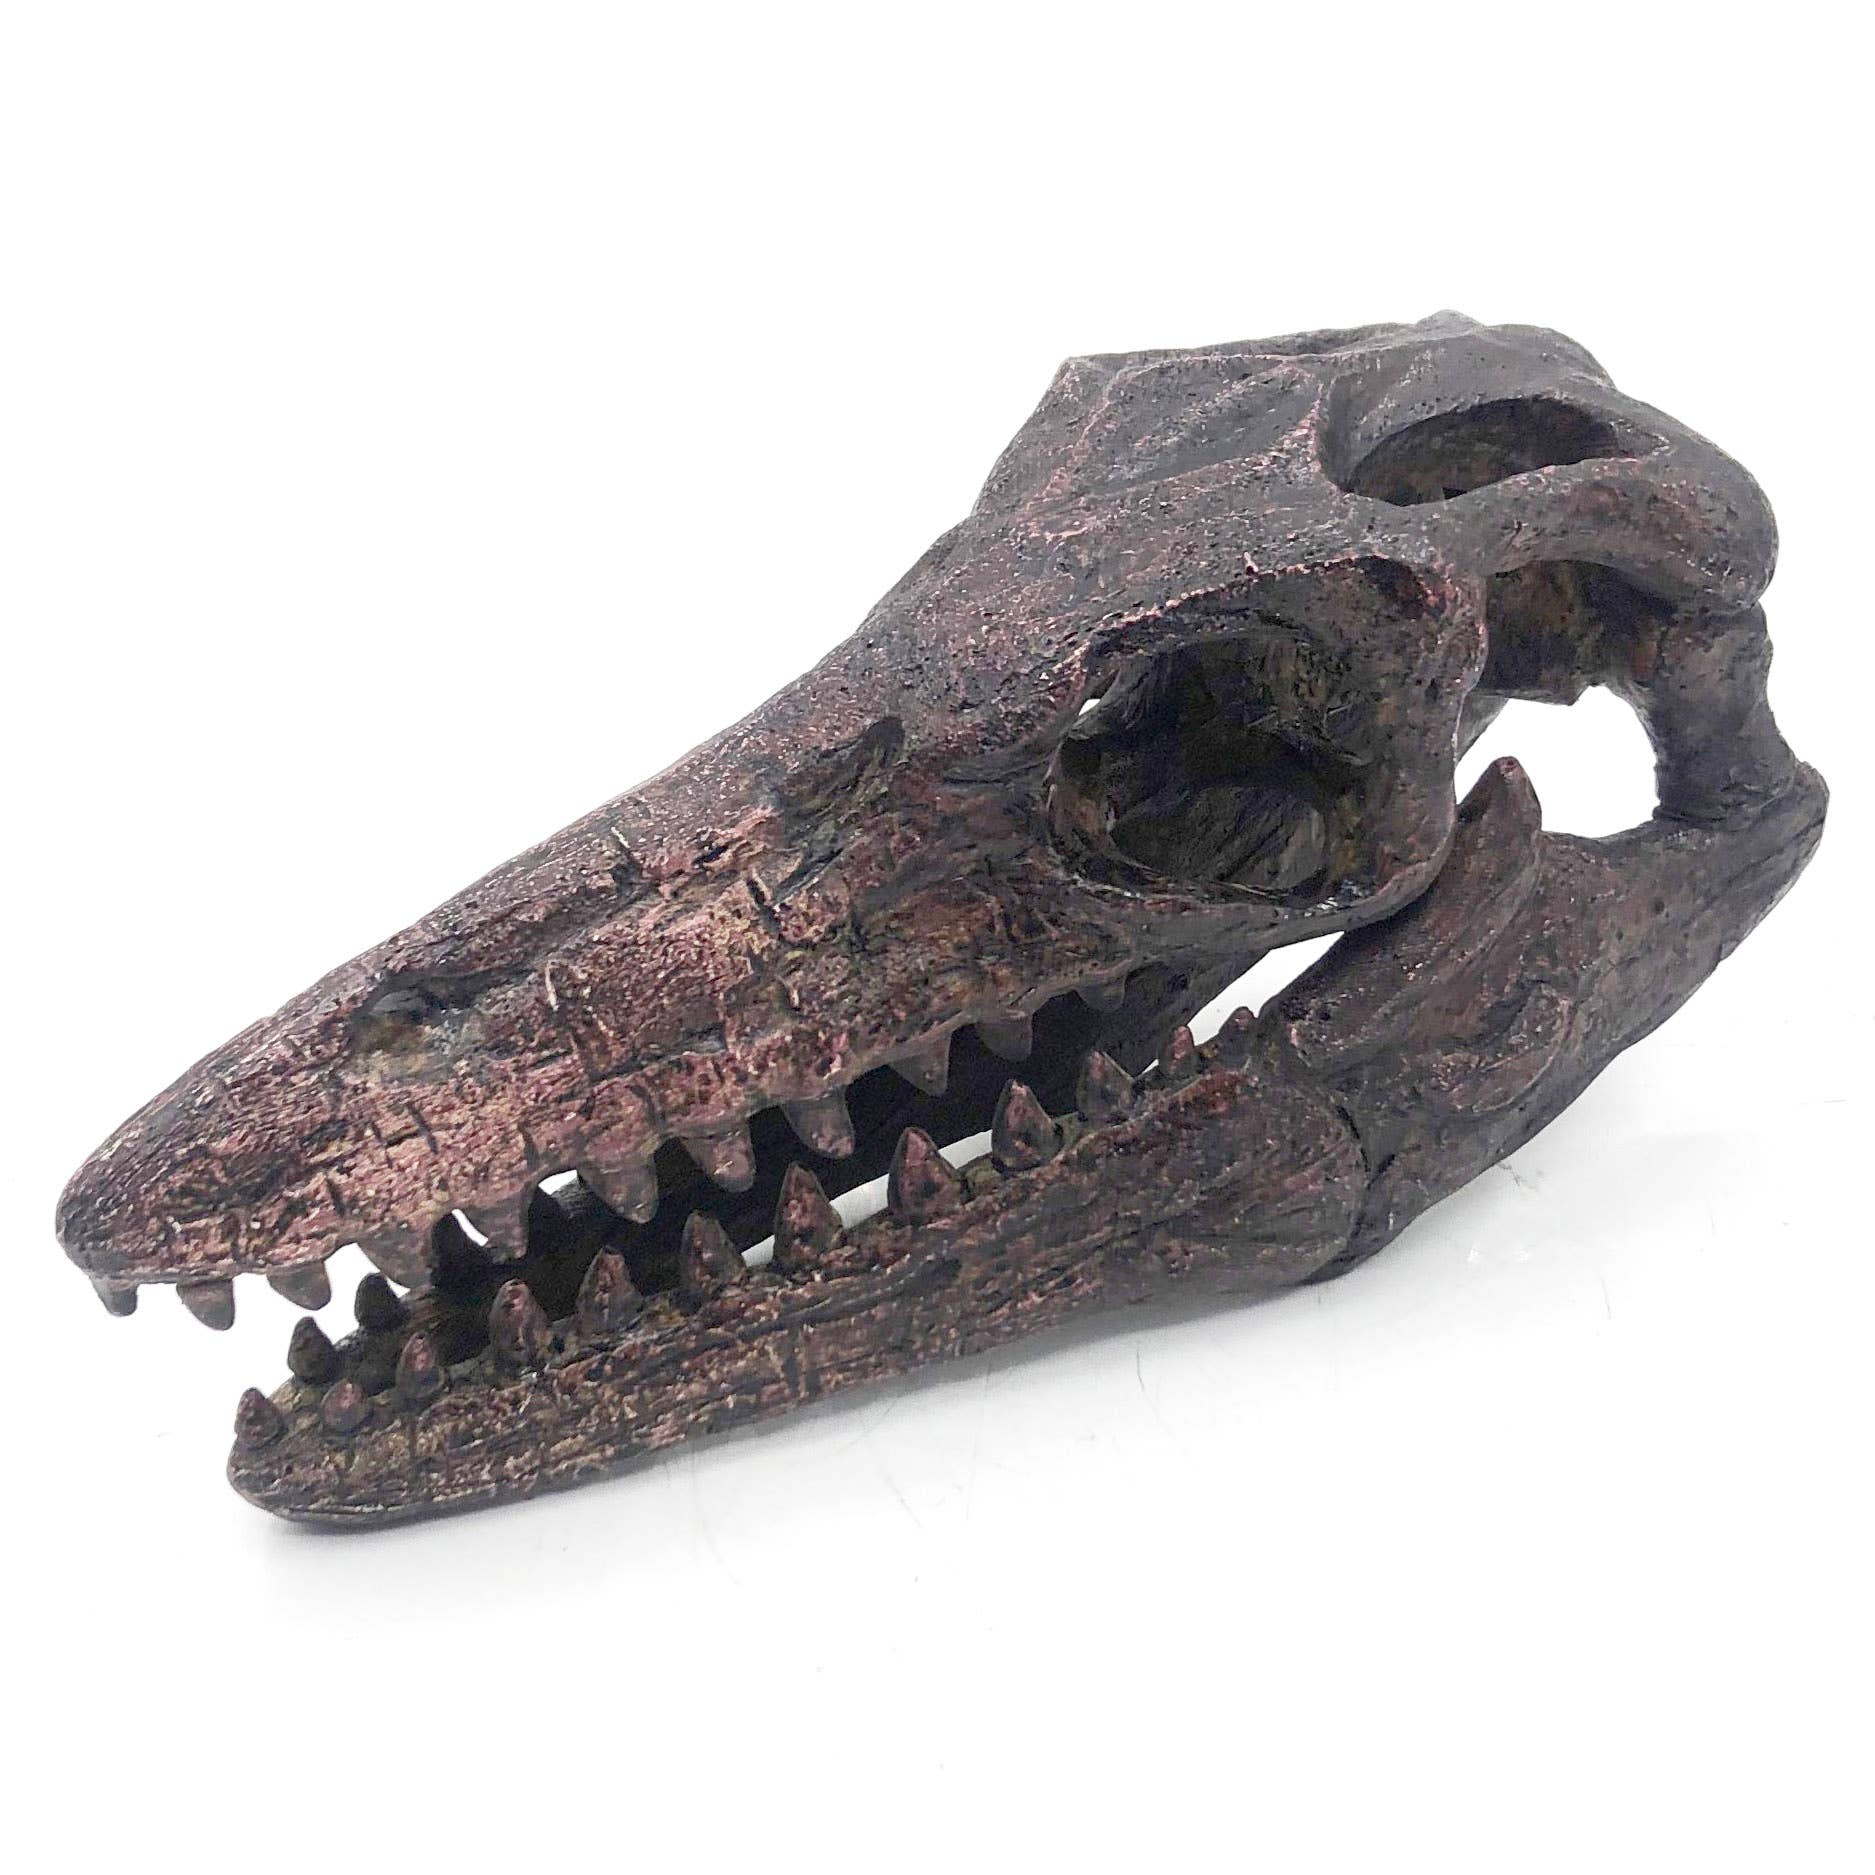 Replica Mosasaurus Mini Dinosaur Fossil Skull - Stemcell Science Shop